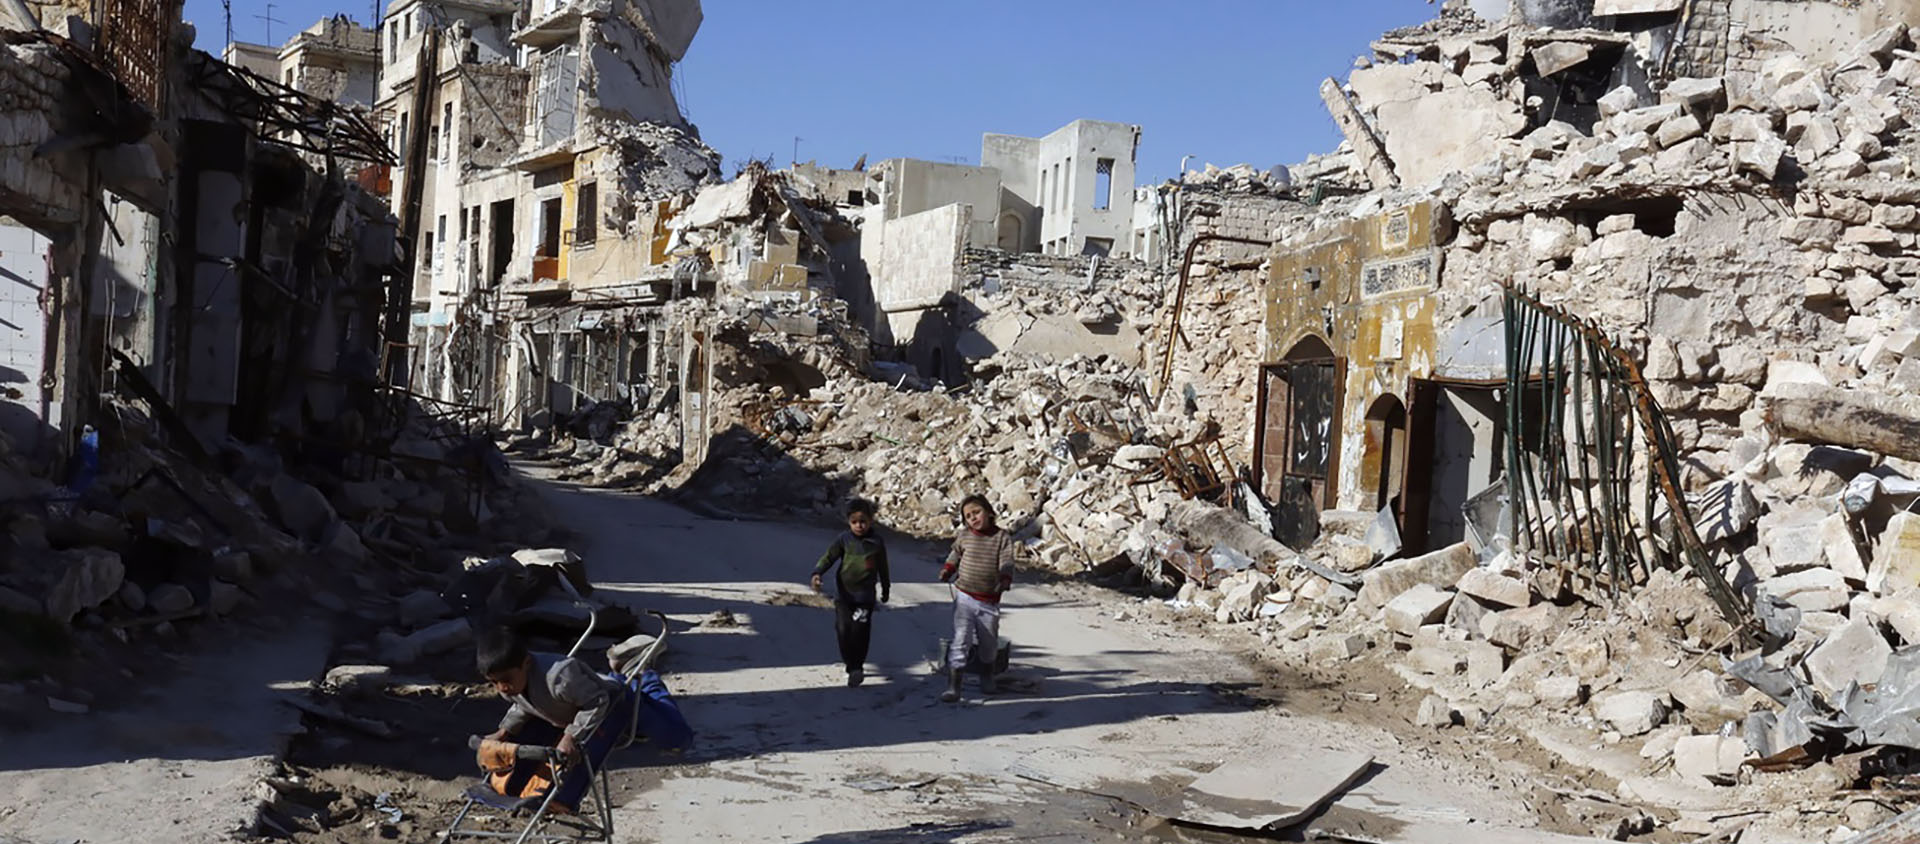 Les ruines d'Alep reprise aux rebelles par l'armée syrienne. La guerre a fait entre 300'000 et 500'000 morts | © Youssef Badawi /eystone